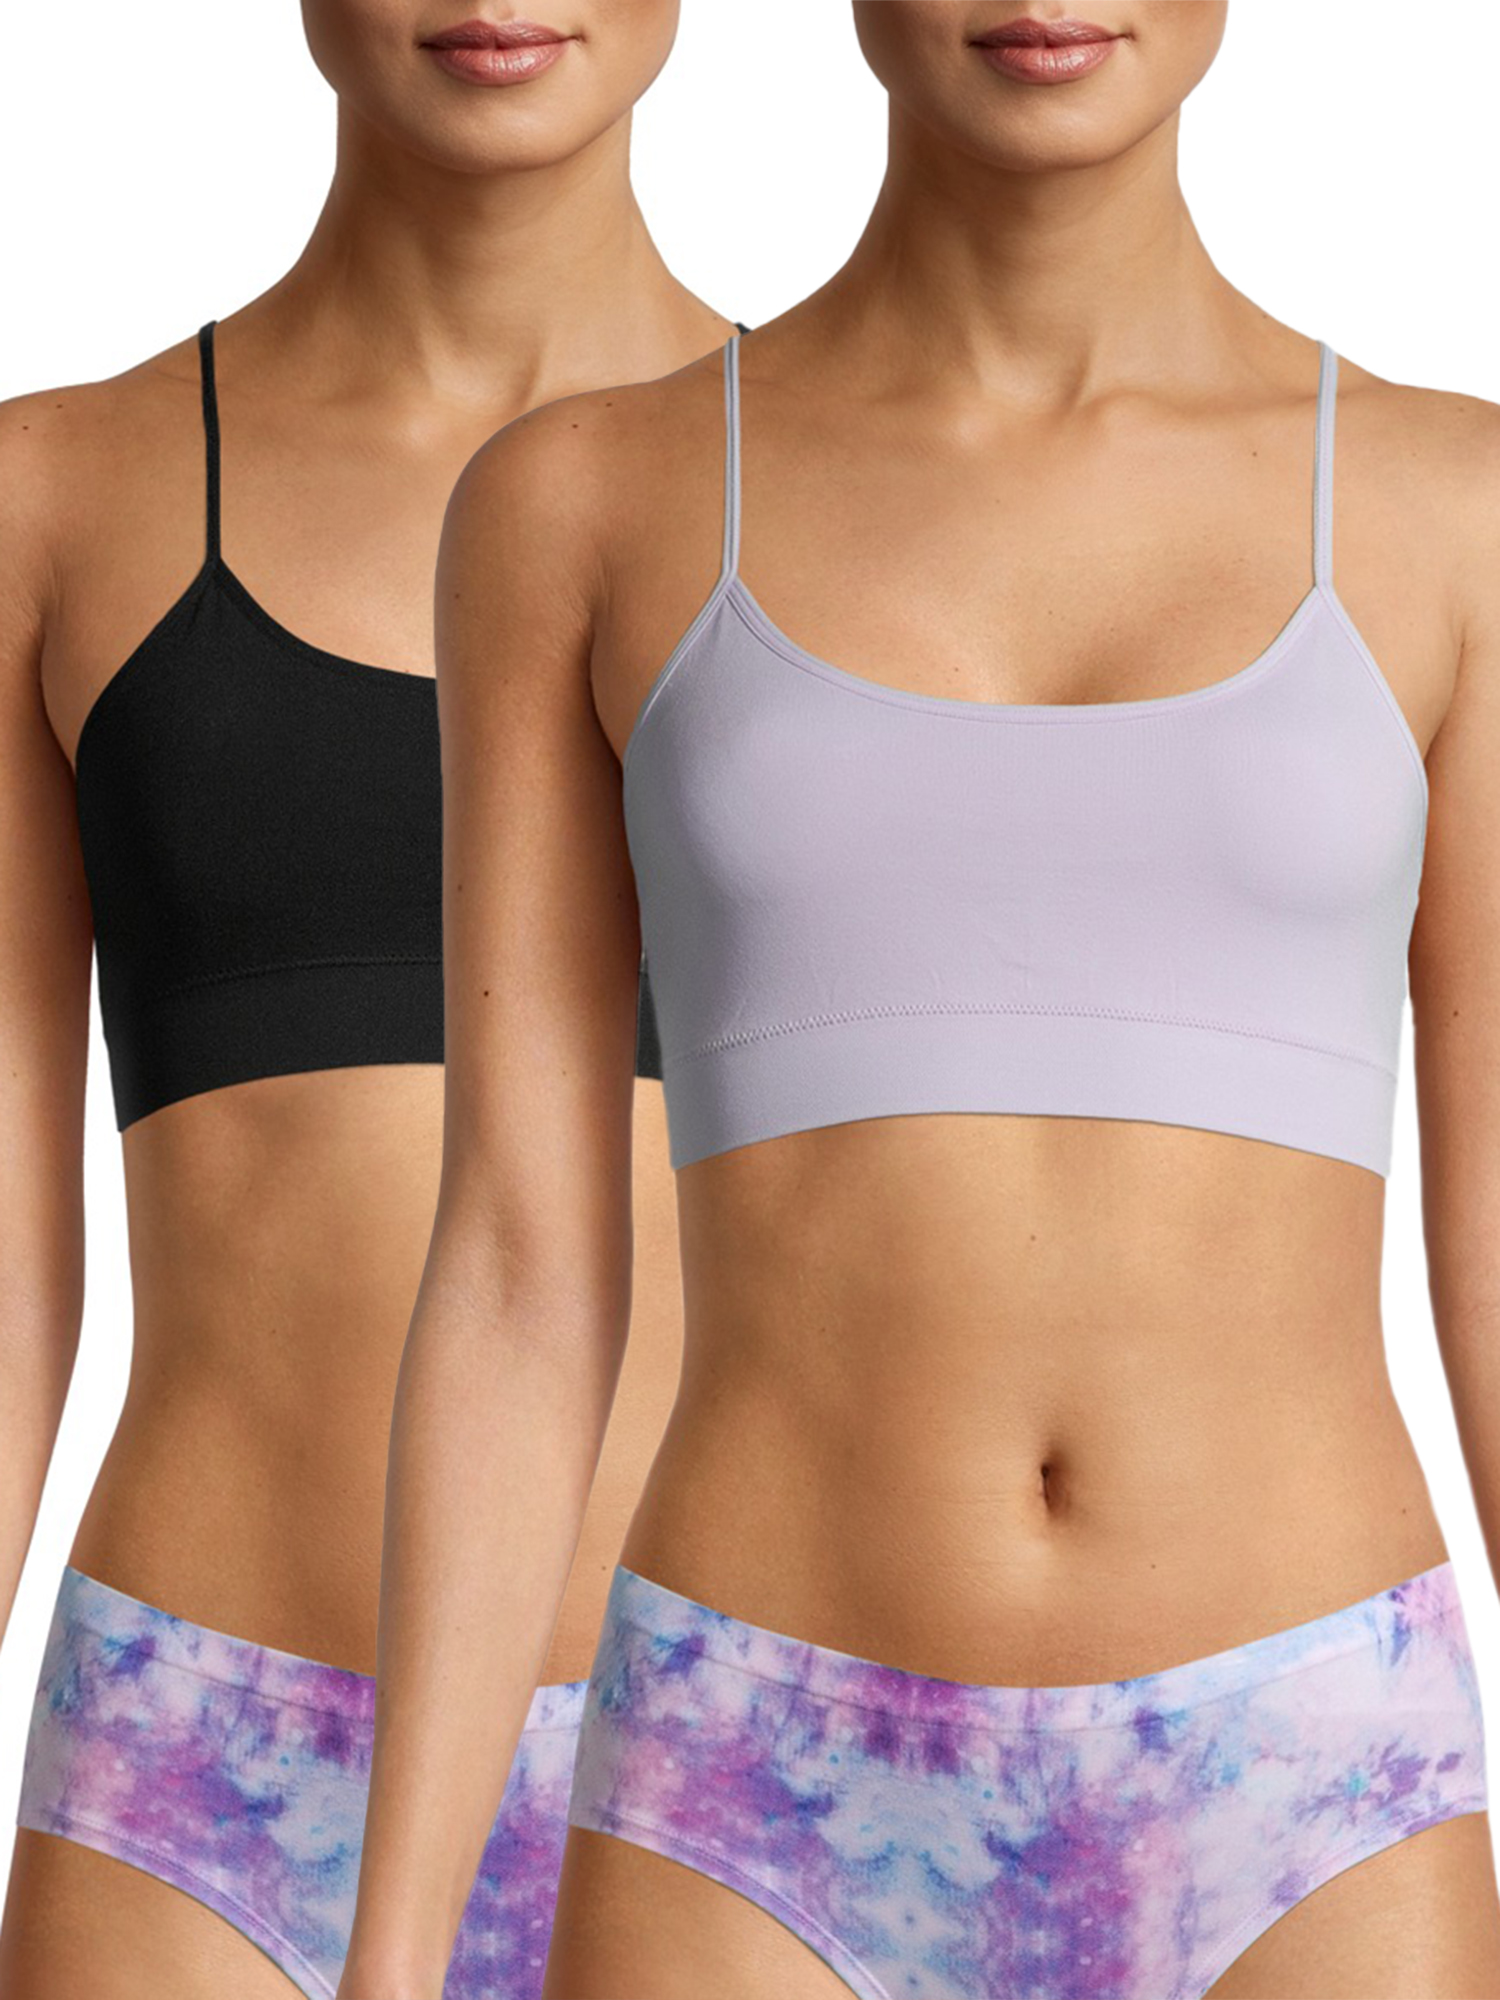 Ready to ship Blush colored bralette Lounge wear. 100/% cotton Yoga bra Size M